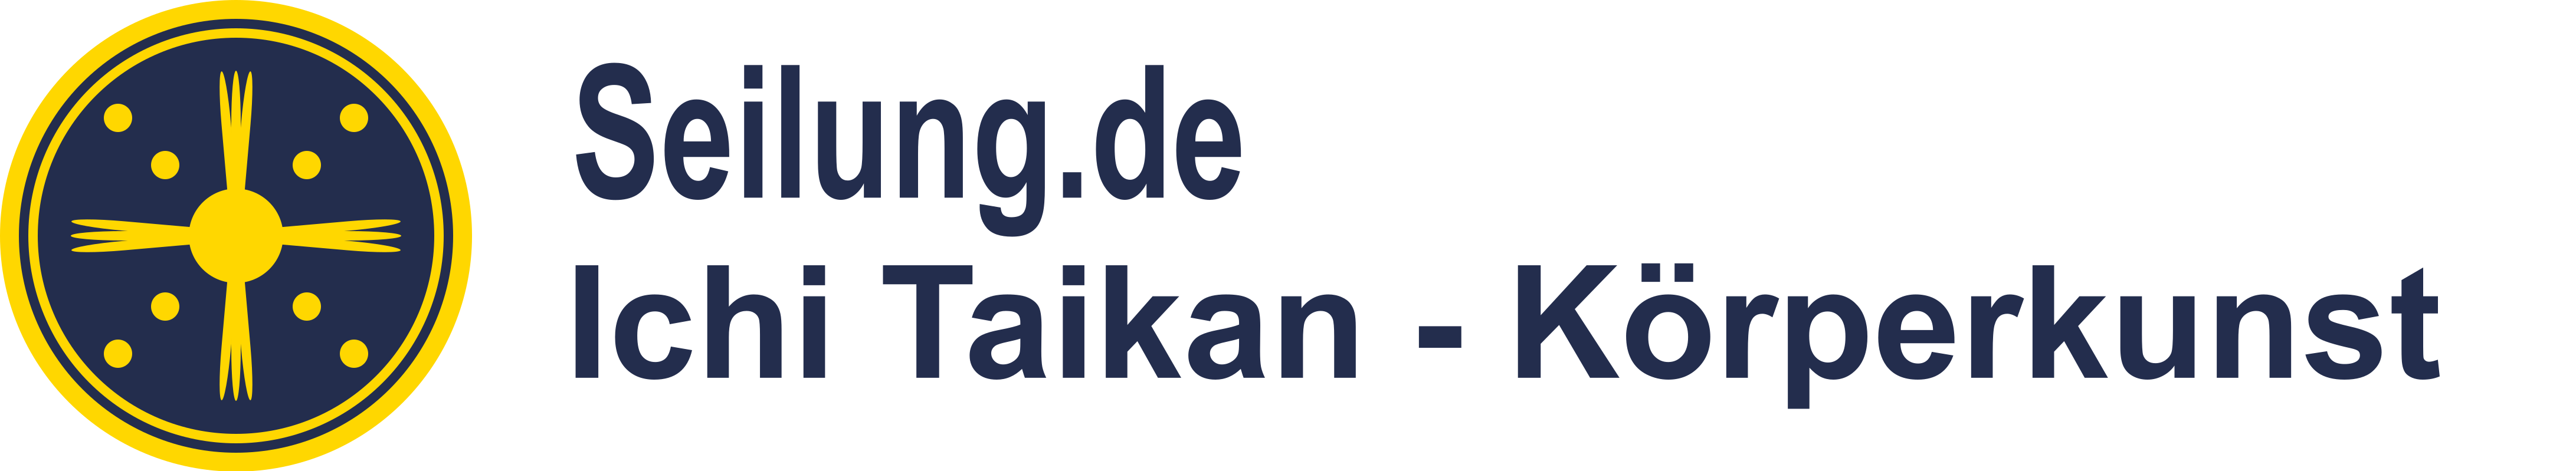 Logo Seilung.de